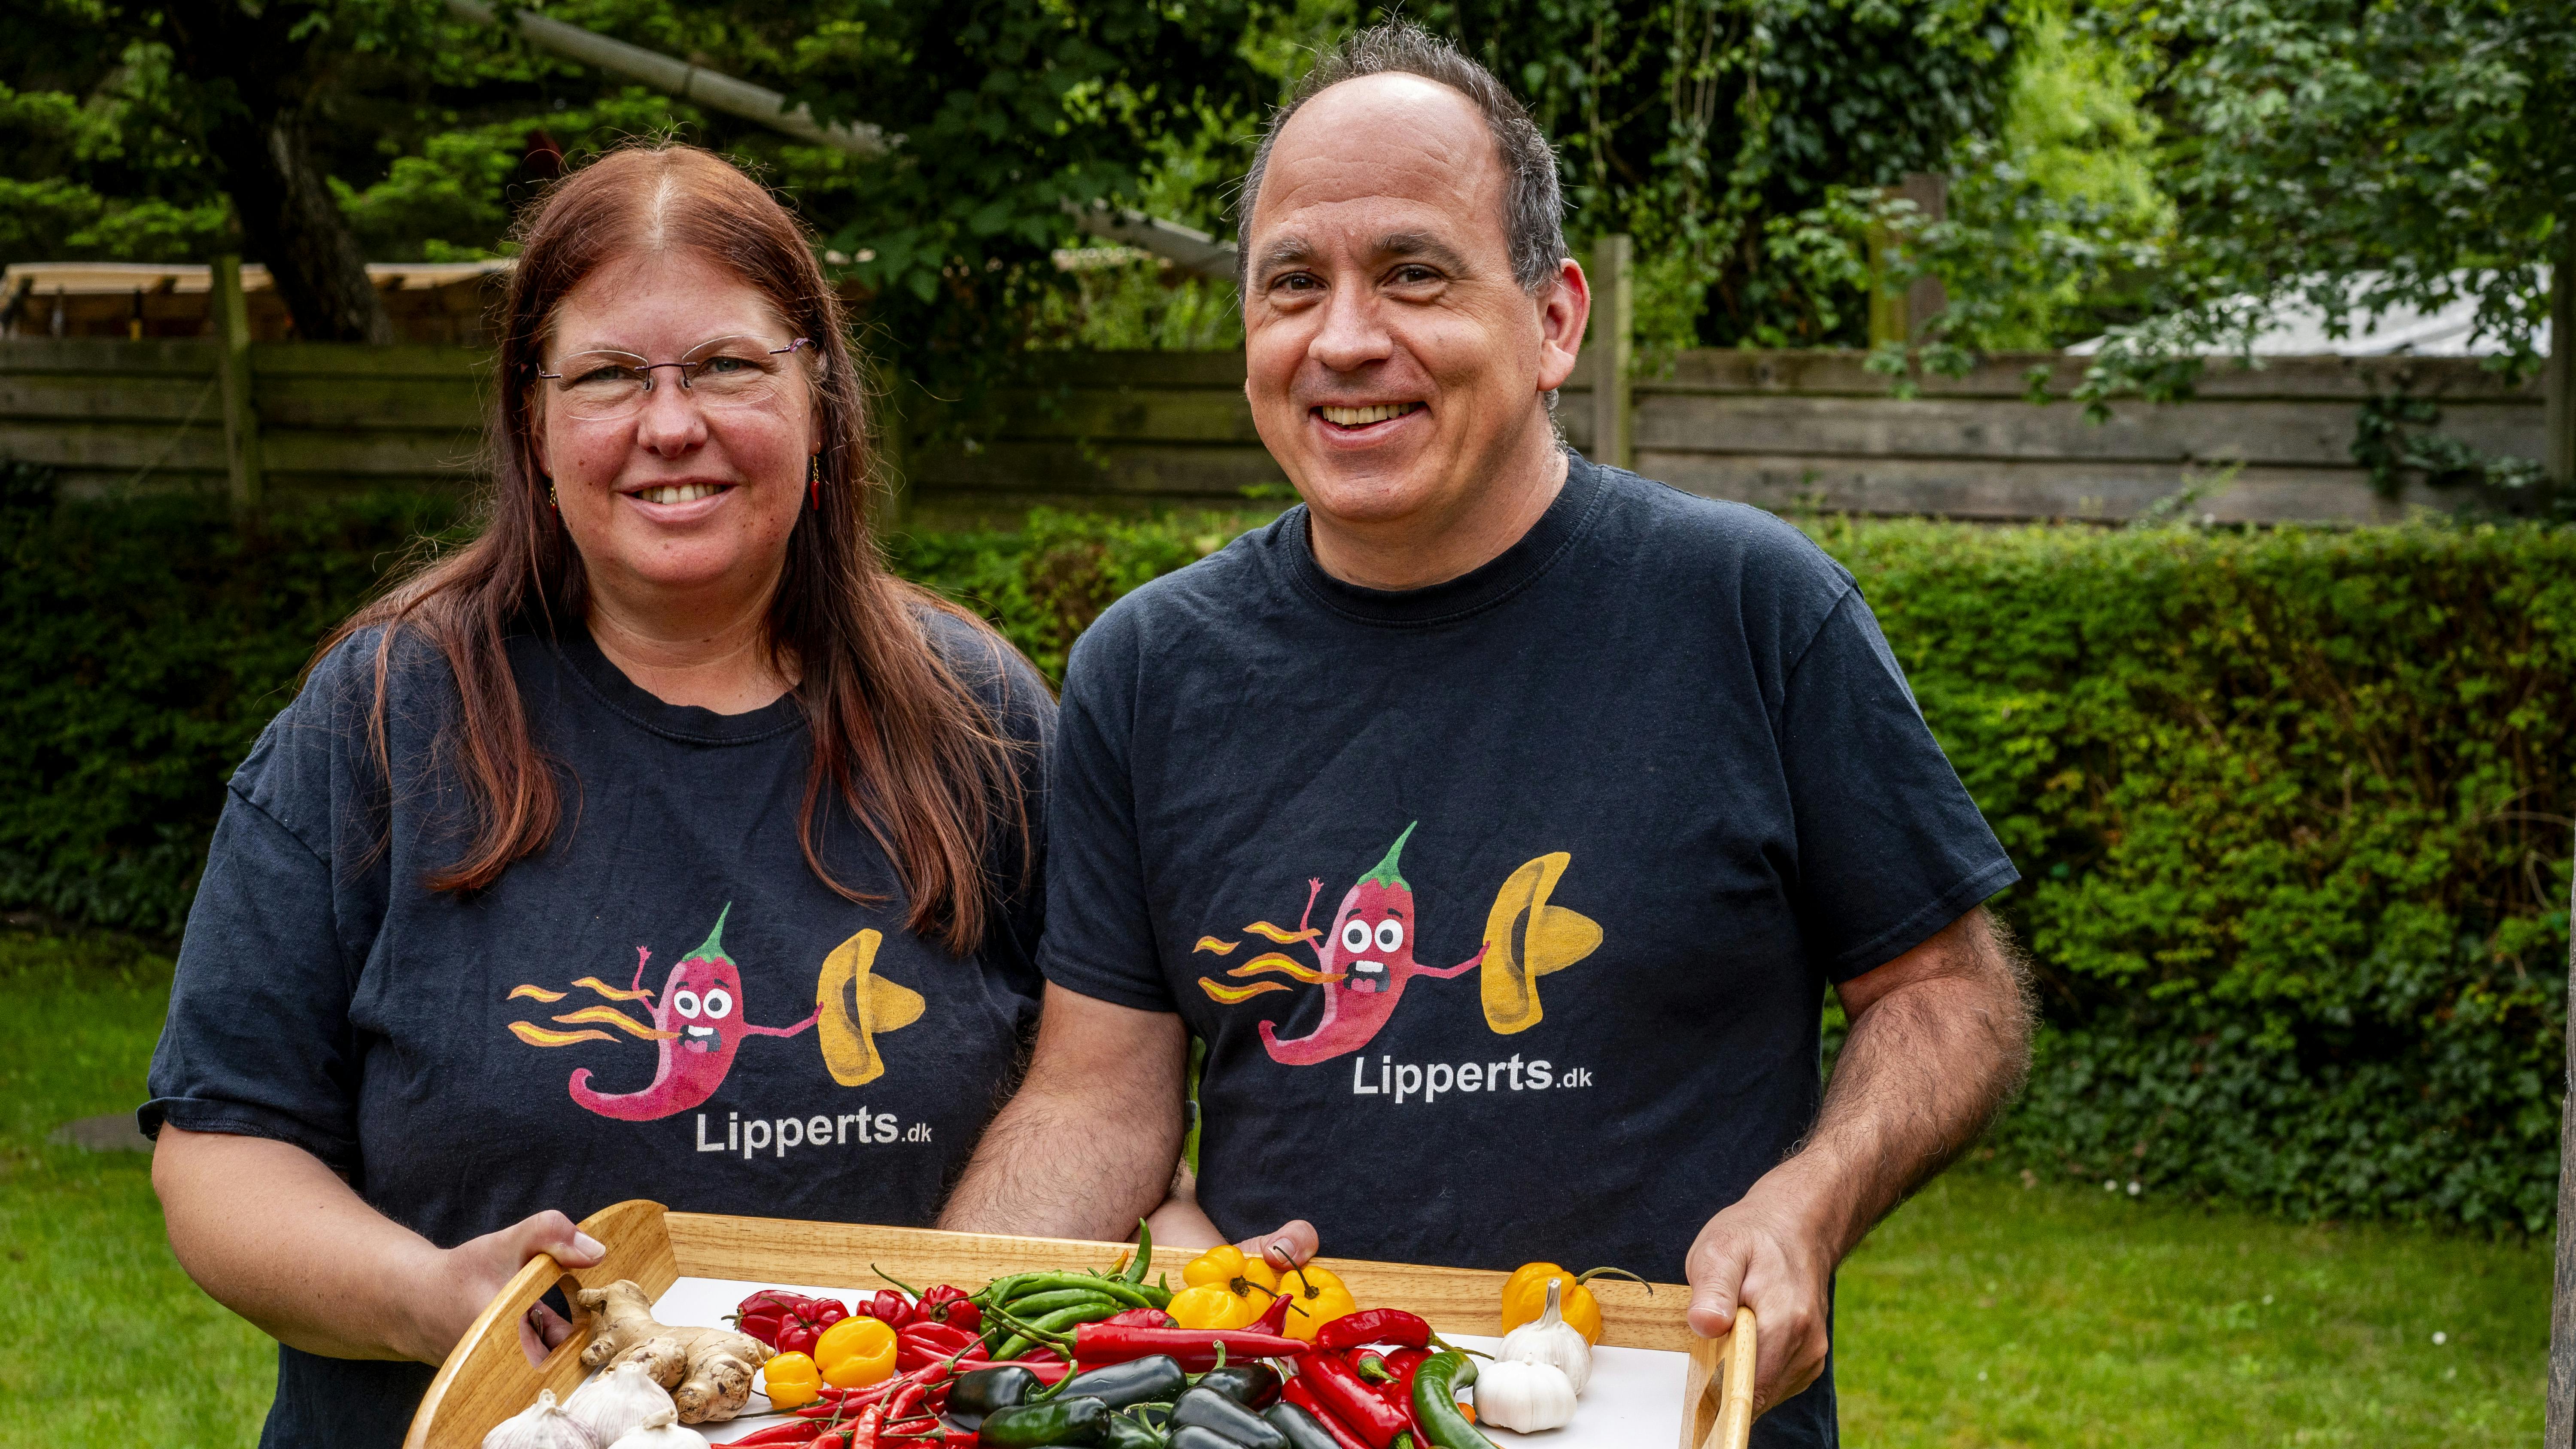 Annika og Tonny Lippert er chilinørder og indehavere af firmaet Lipperts.dk eller Lipperts Landbod.